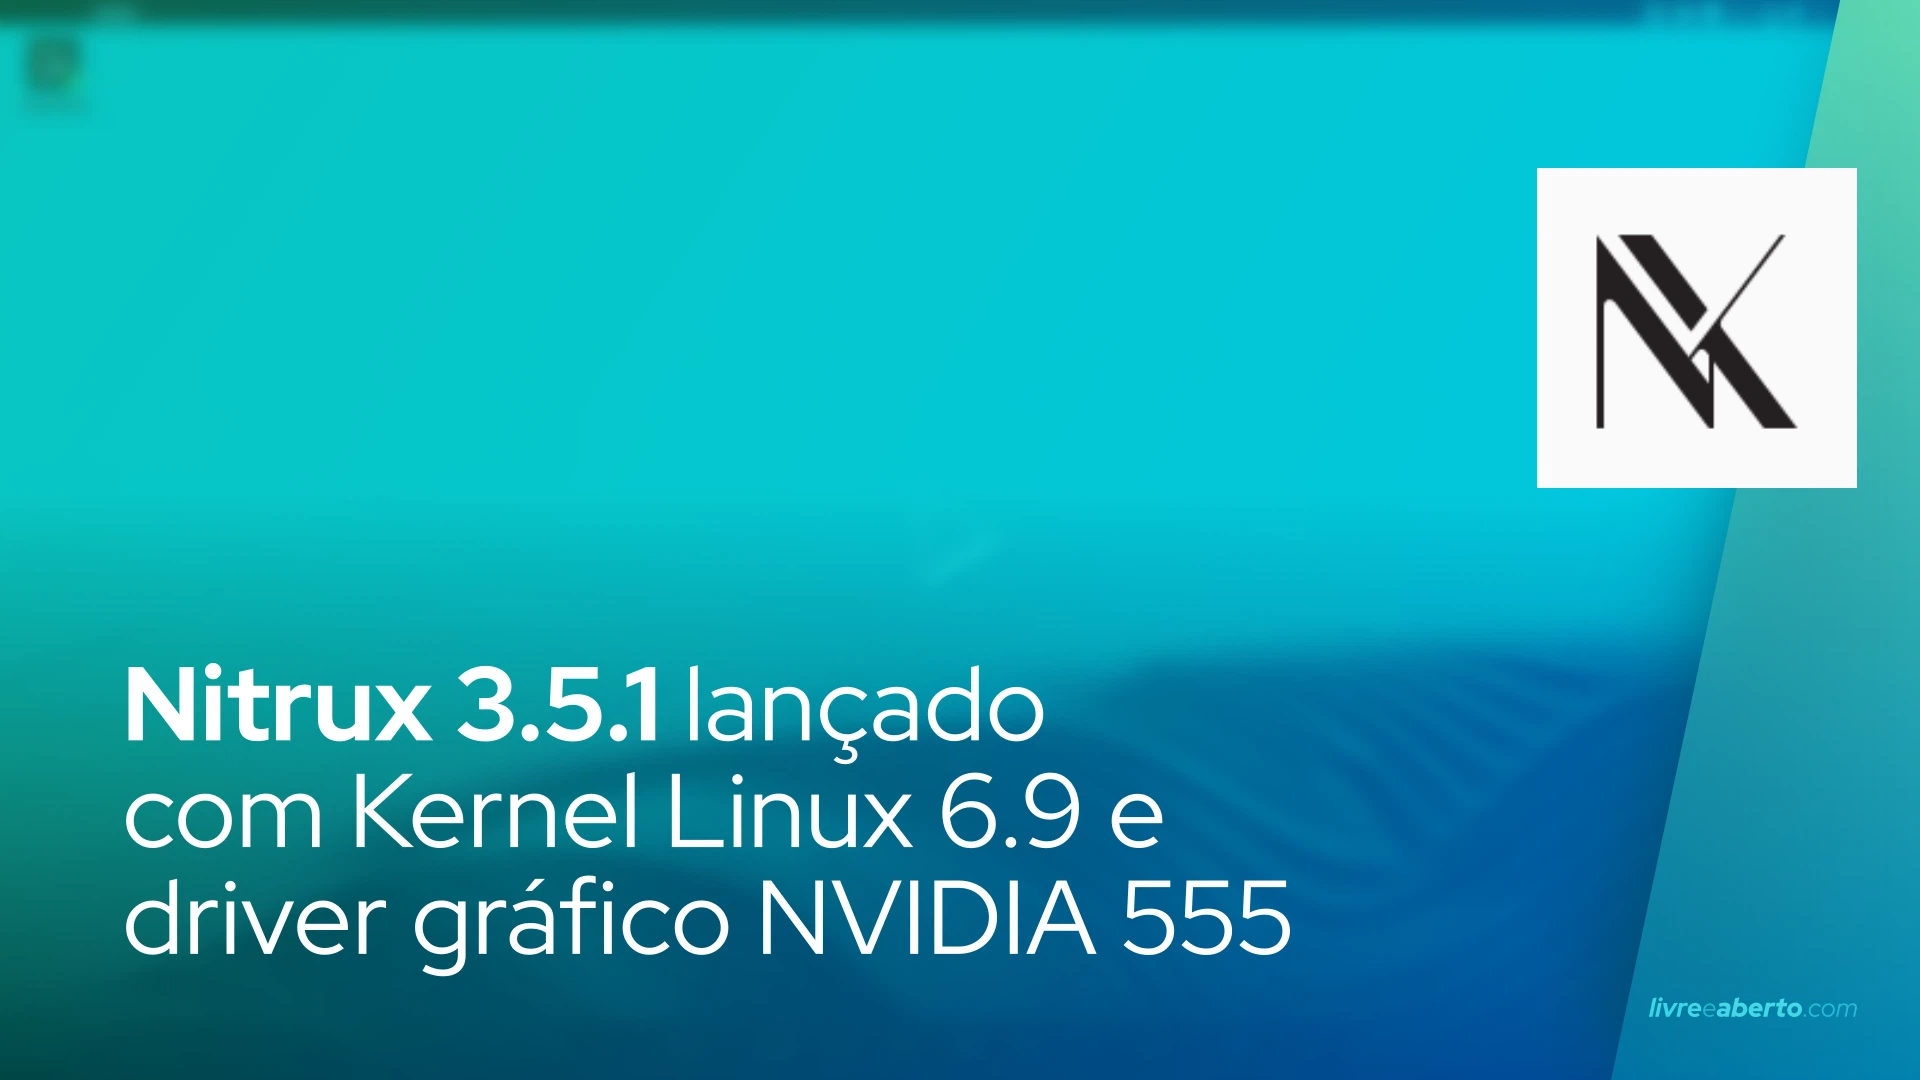 Nitrux 3.5.1 lançado com Kernel Linux 6.9 e driver gráfico NVIDIA 555